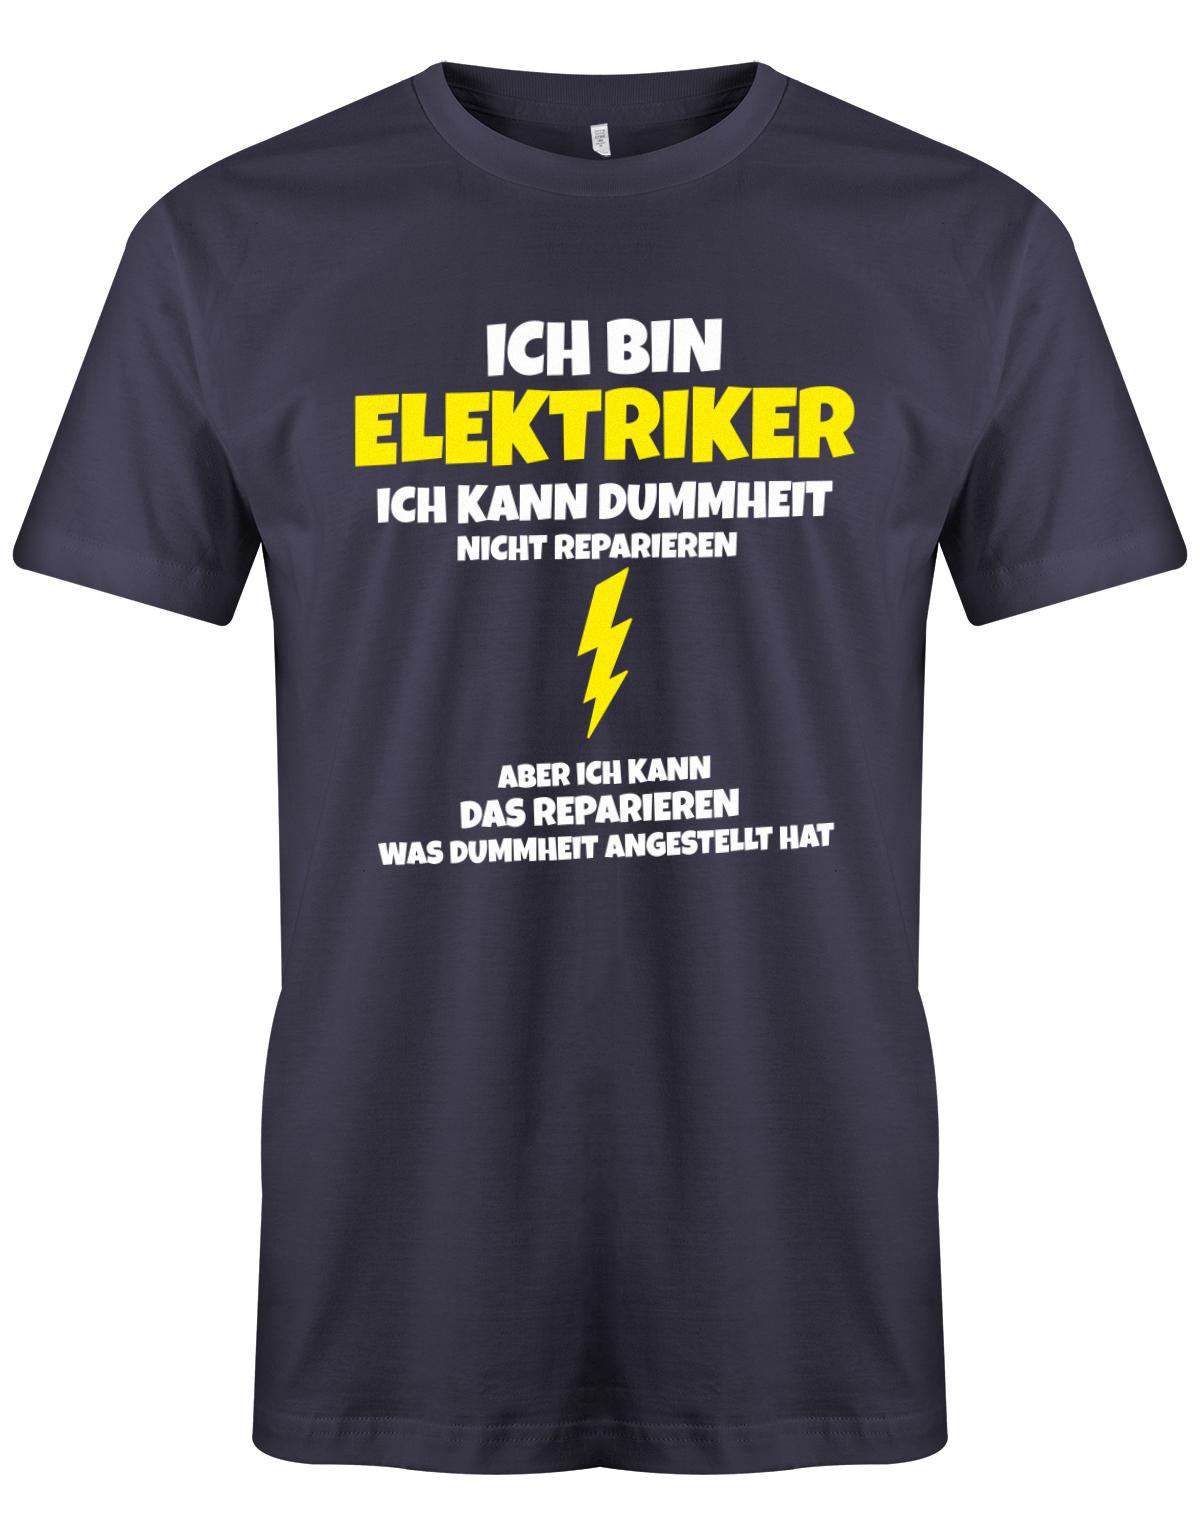 Elektriker Shirt - Ich bin Elektriker, ich kann Dummheit nicht reparieren. Aber ich kann das reparieren, was Dummheit angestellt hat. Navy